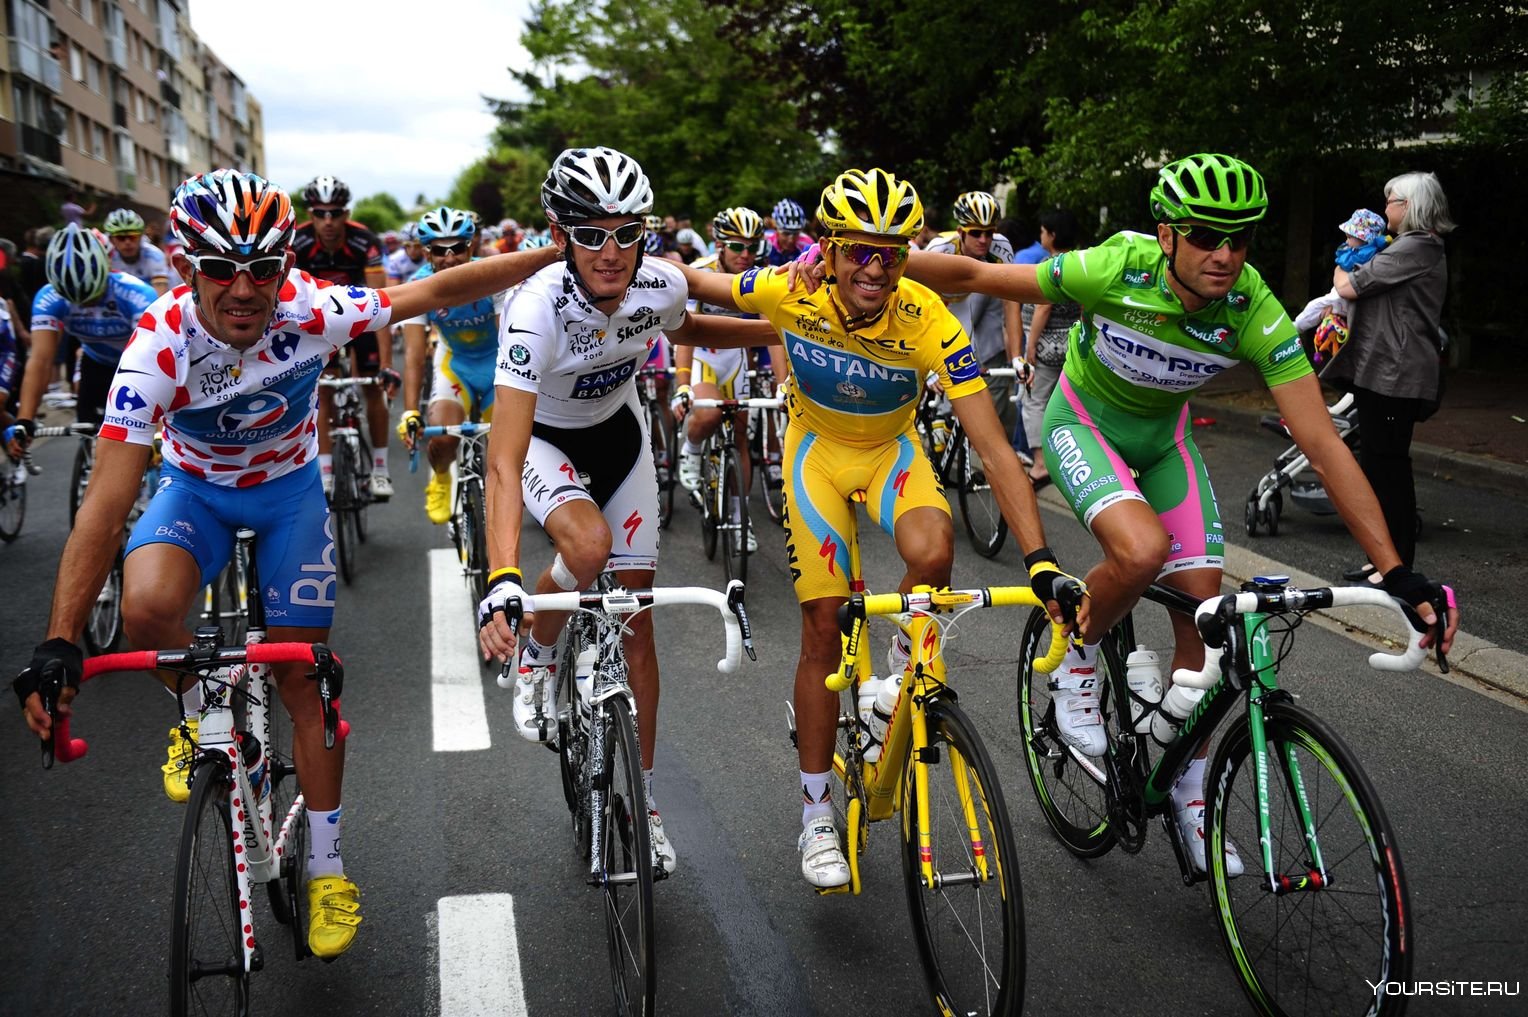 Олимпийские велосипедисты. Альберто Контадор 2010. Тур де Франс. Велосипеды спорт тур де Франс. Tour de France велогонщики.